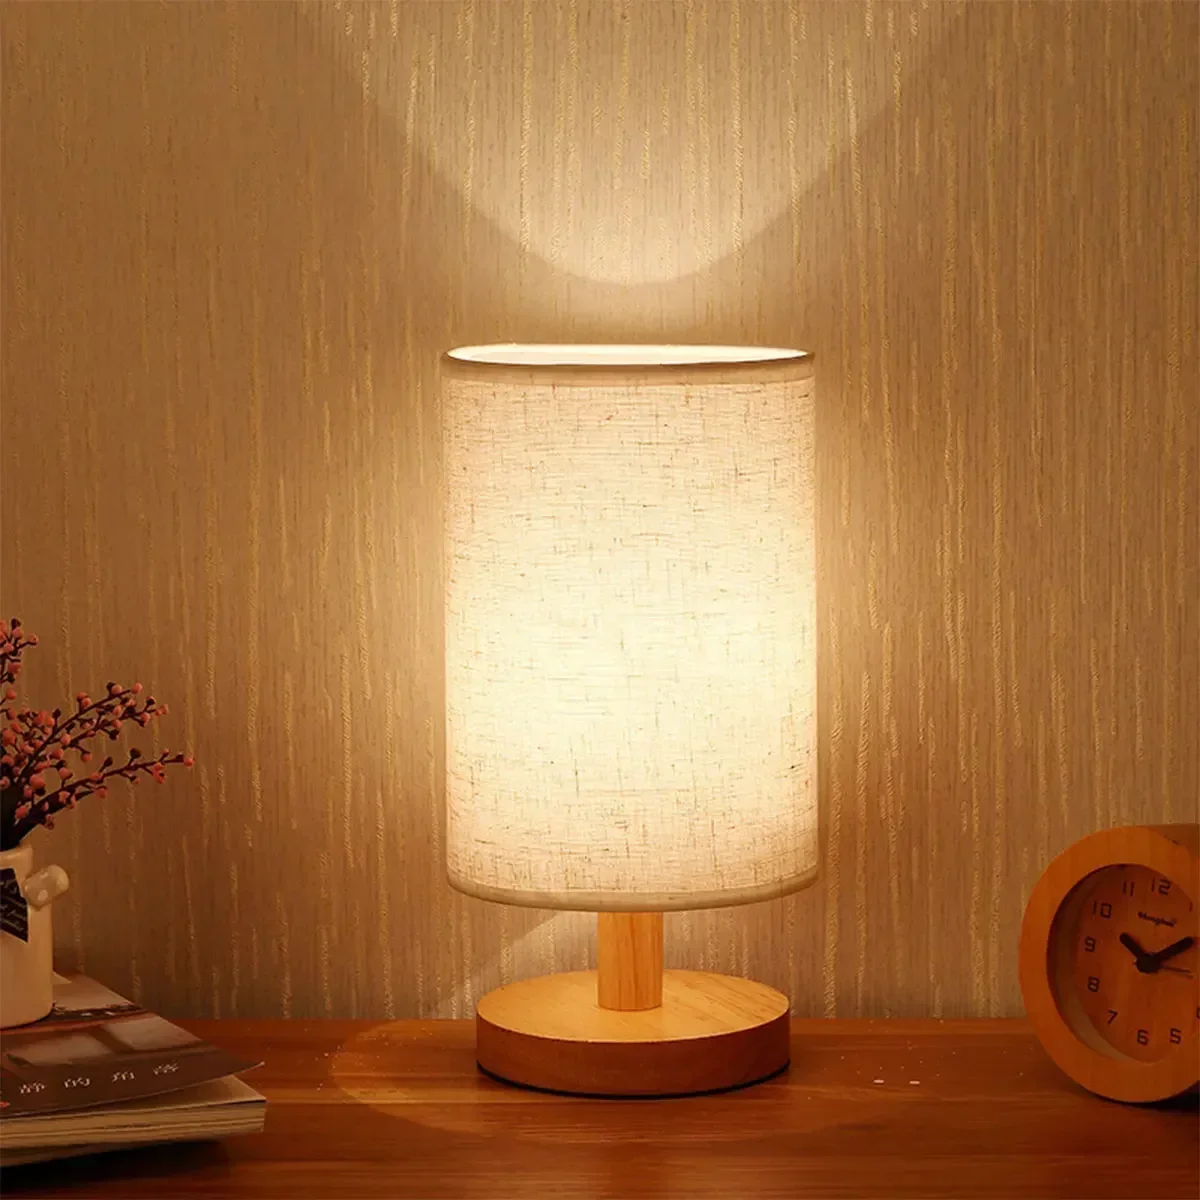 

Прикроватная USB-лампа, ночники, Напольная Лампа для спальни, деревянная настольная лампа, прикроватная лампа, ночник с цилиндрическим абажуром, домашний декор